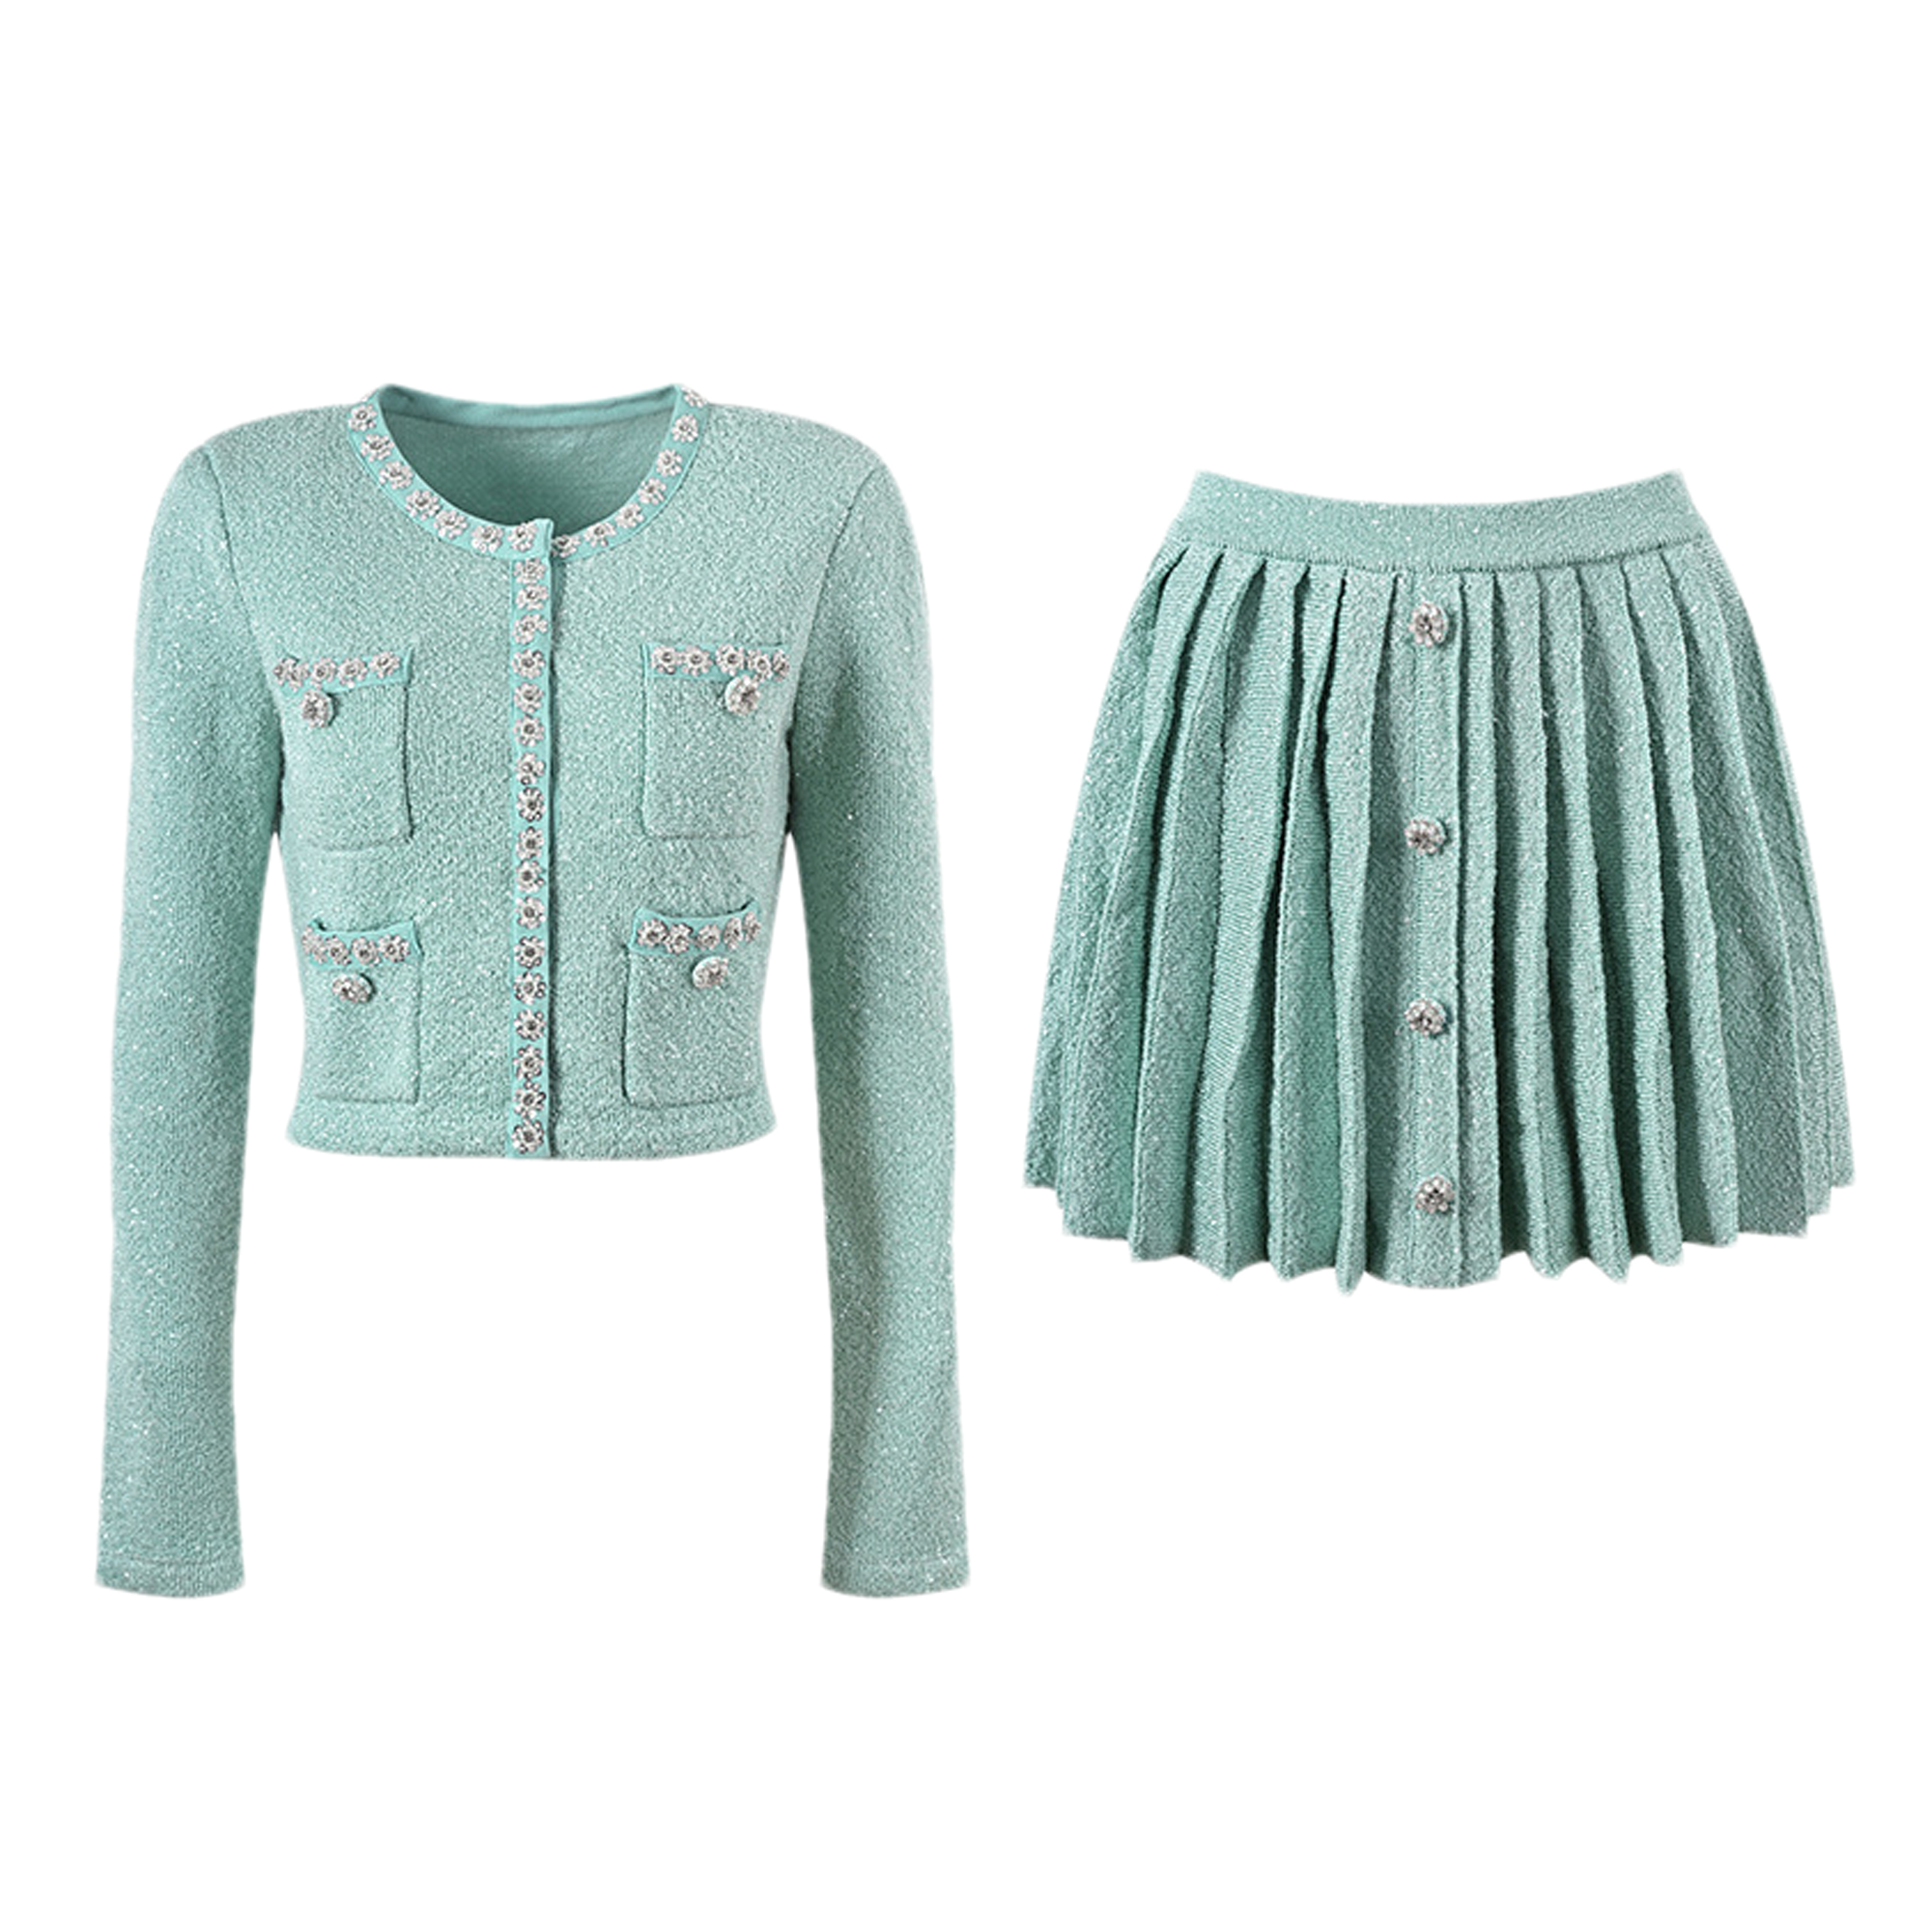 Manon embellished jacket & skirt matching set